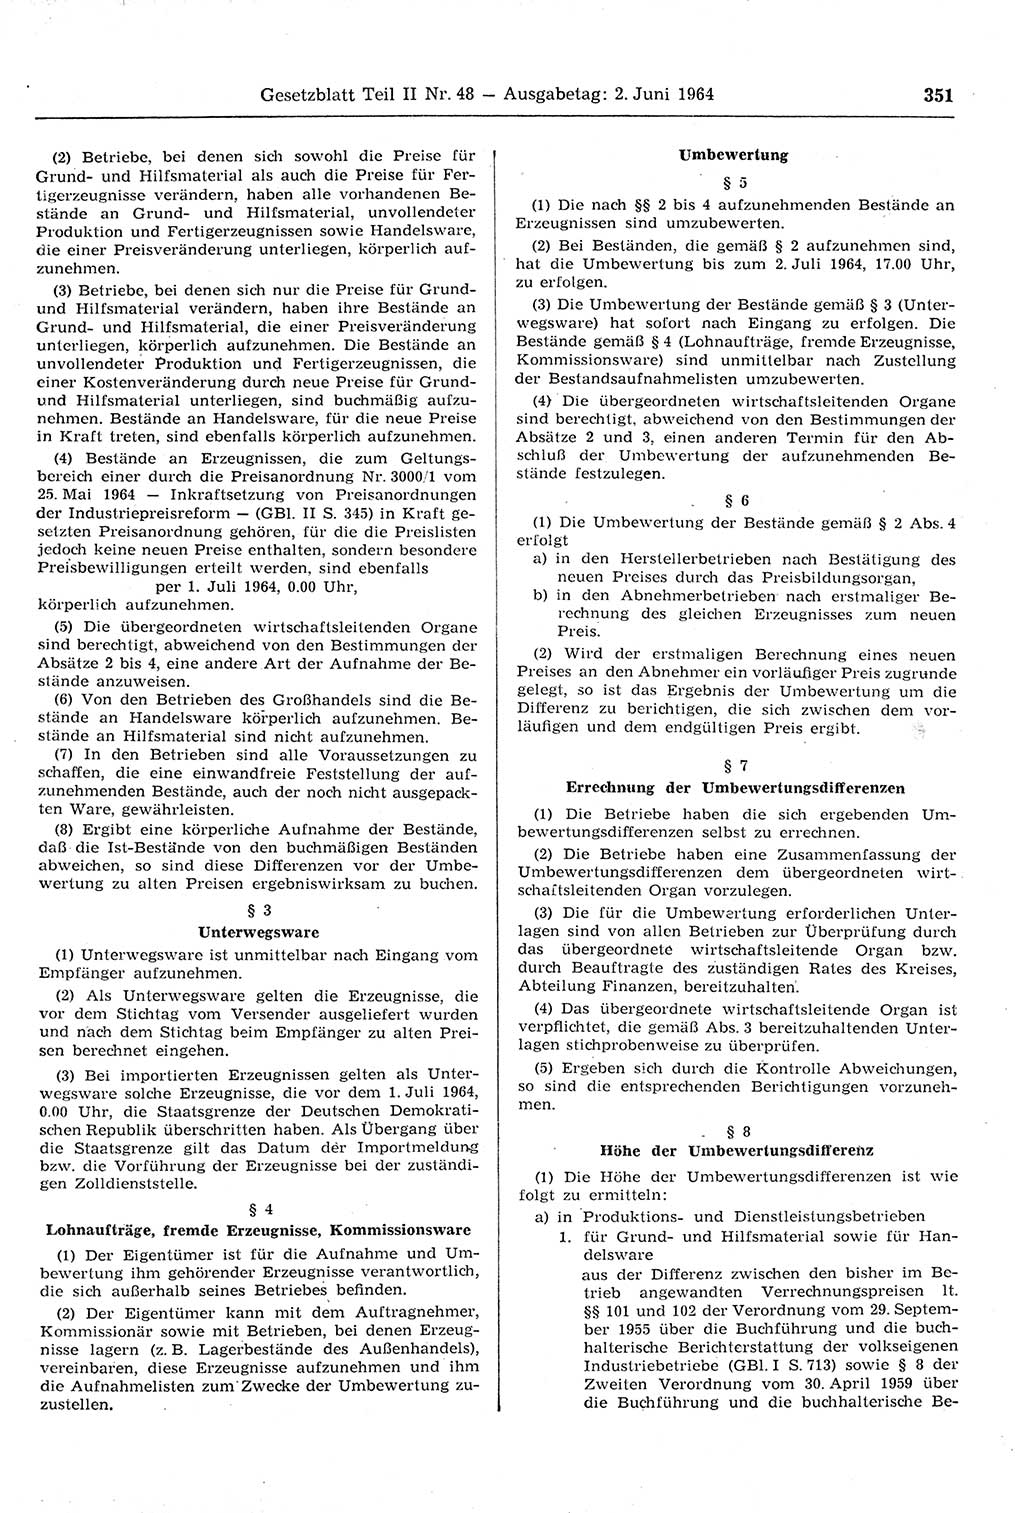 Gesetzblatt (GBl.) der Deutschen Demokratischen Republik (DDR) Teil ⅠⅠ 1964, Seite 351 (GBl. DDR ⅠⅠ 1964, S. 351)